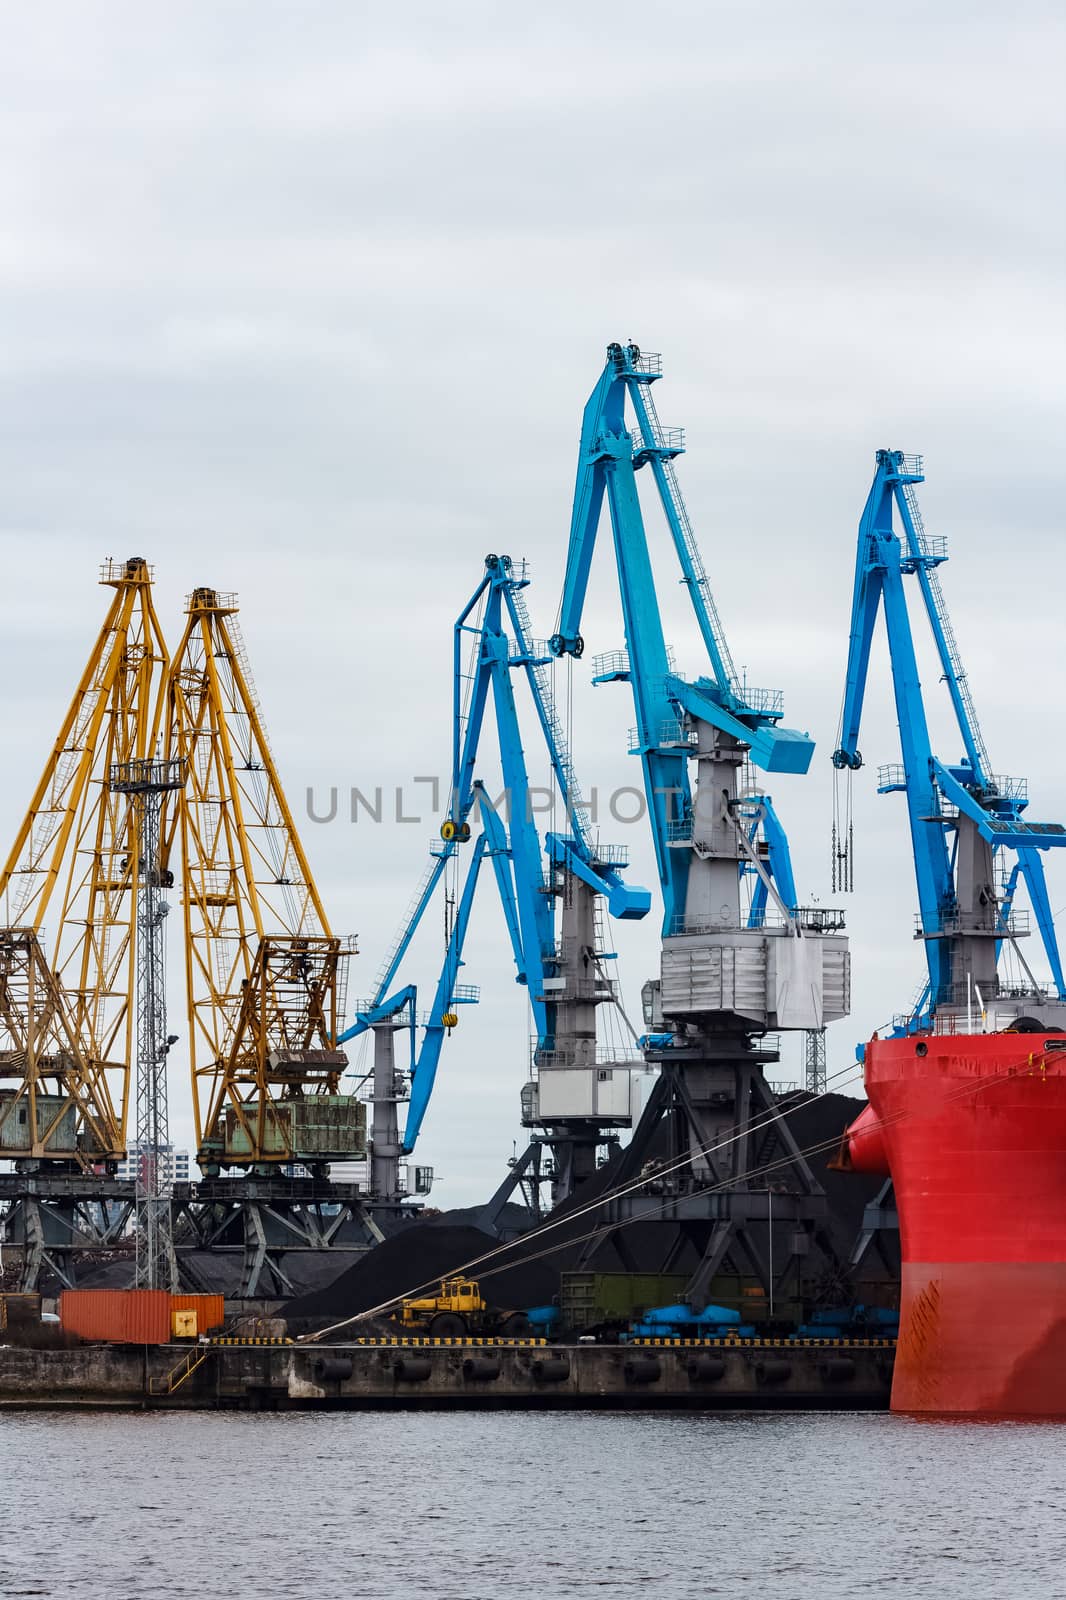 Blue cargo cranes in the port of Riga, Europe